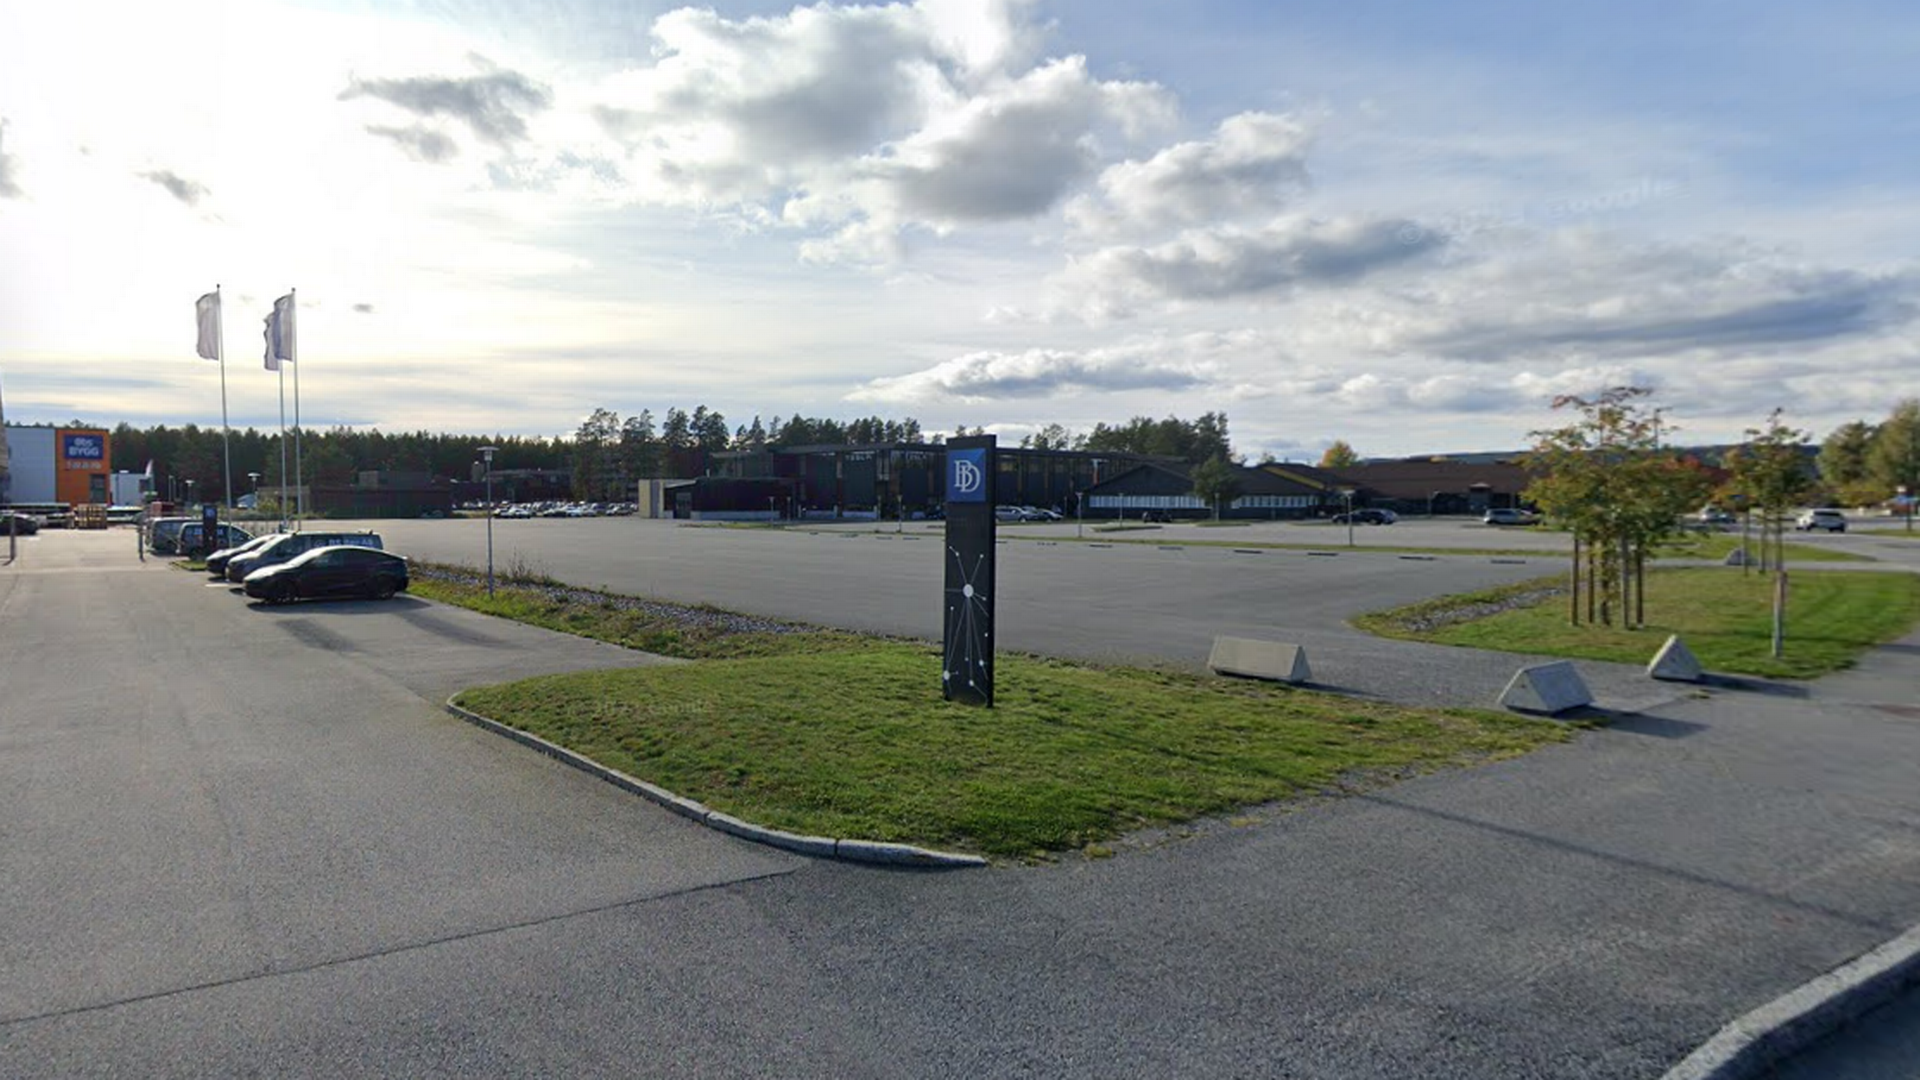 SETTER FOTEN NED: Ringerike kommune sier foreløpig nei til samlokalisering. | Foto: Google Street View